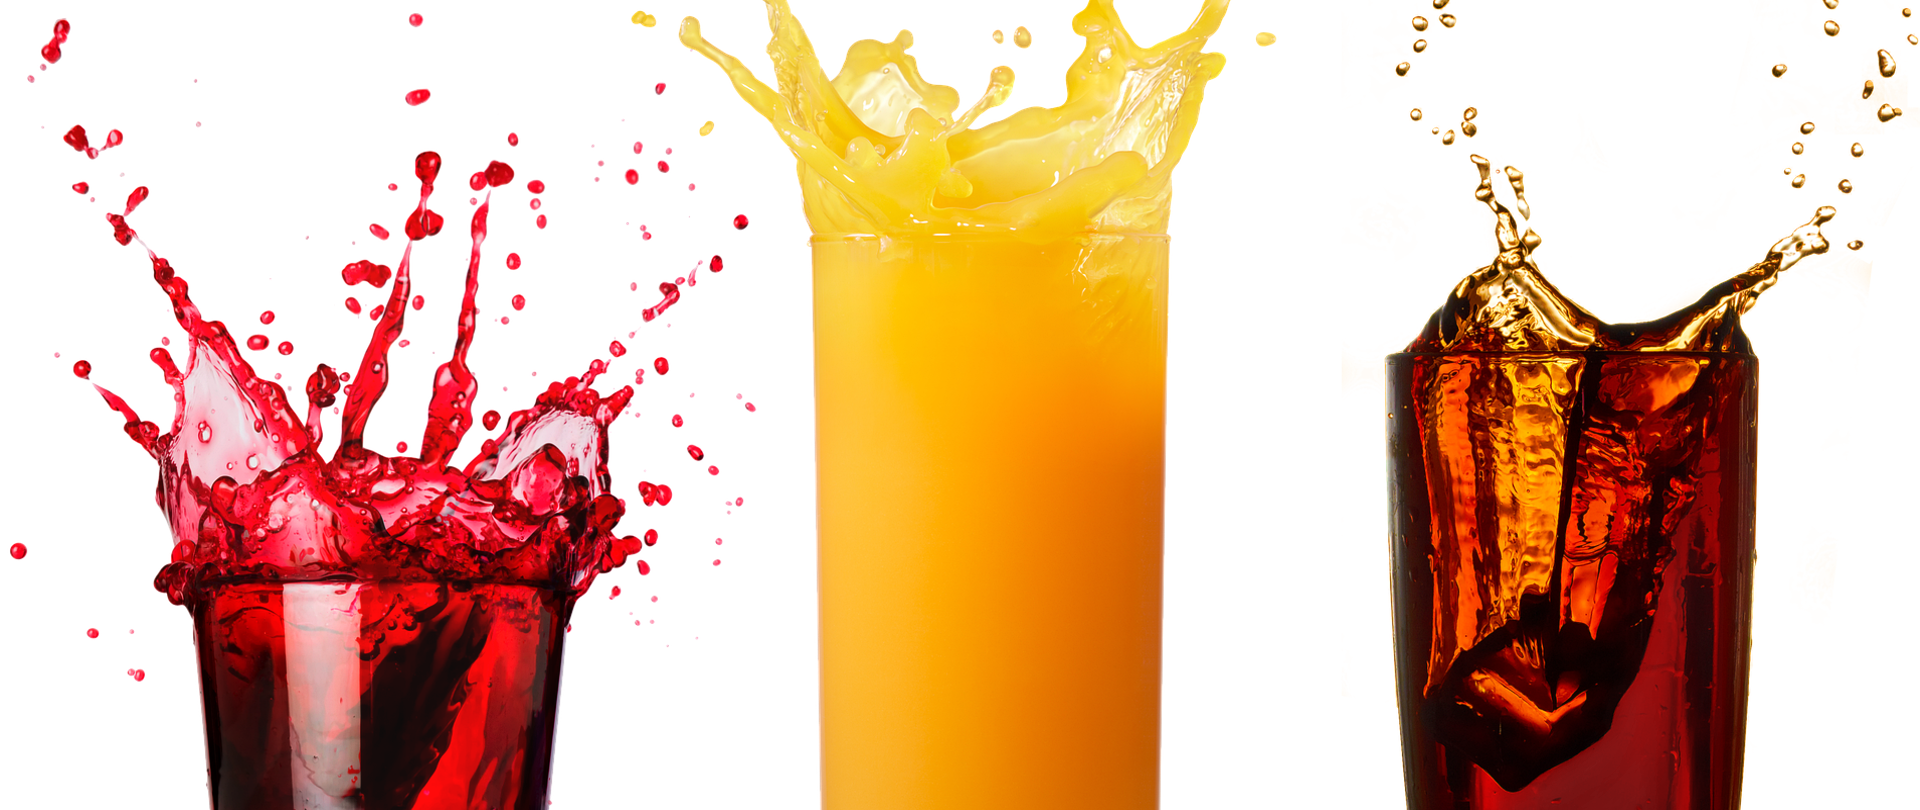 Na zdjęciu od lewej znajdują się: niska szklanka z sokiem owocowym, wysoka szklanka z sokiem pomarańczowym, niska szklanka z colą z lodem.